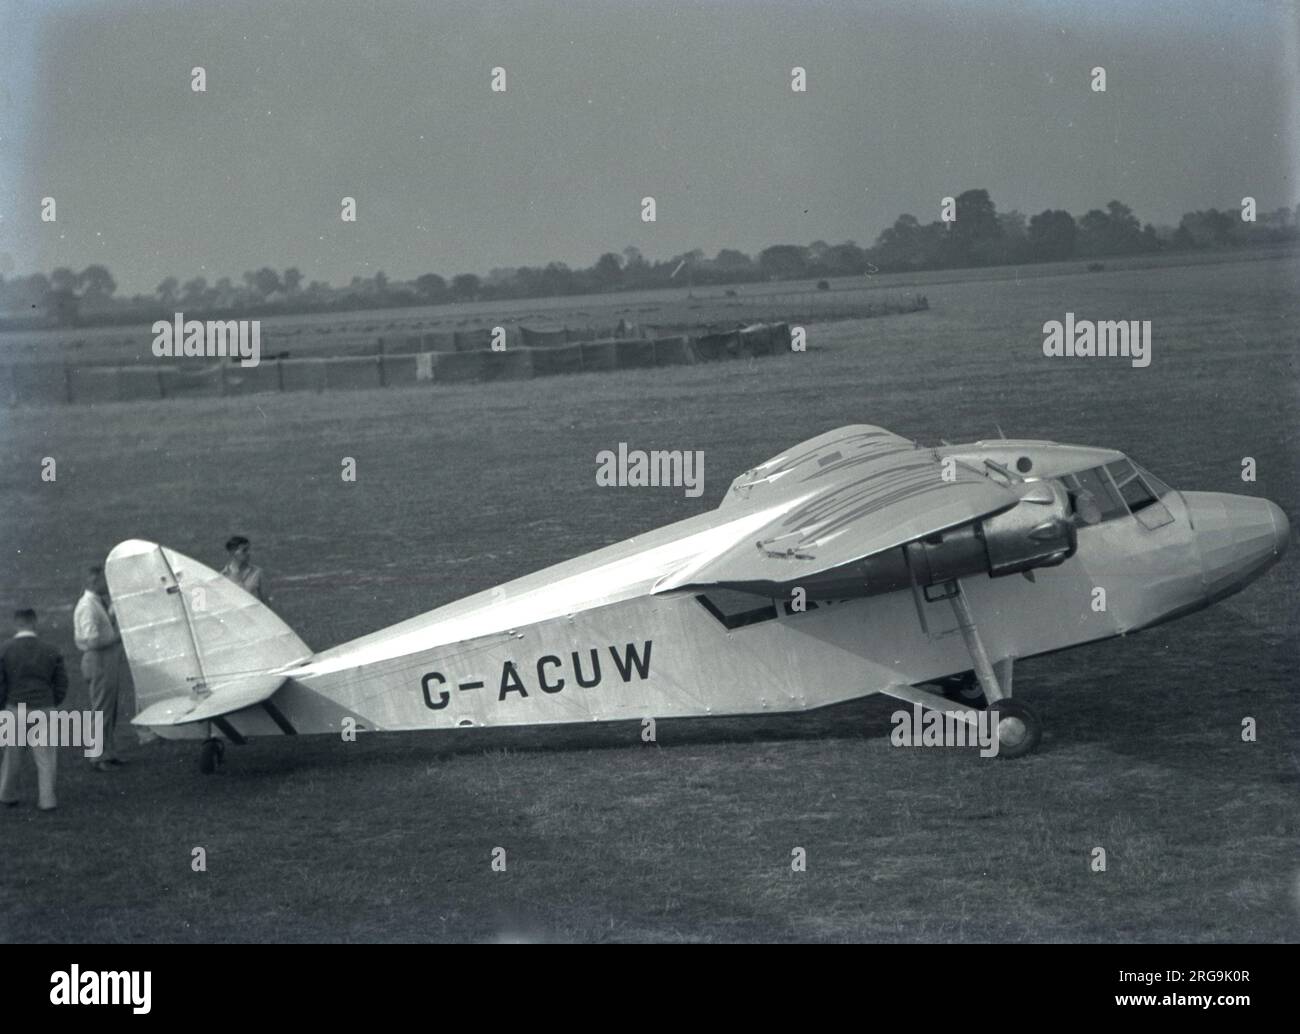 Breve S.16/1 Scion 1 G-ACUW (msn S.775) all'aeroporto di Rochester. La terza produzione di Scion 1, G-ACUW può essere vista con le navicelle del motore basse e il parabrezza di stile precedente. Dopo che Shorts aveva effettuato test di volo e una serie dimostrativa di servizi di linea tra gli aeroporti di Rochester e Southend, G-ACUW è stato venduto ad Atlantic Coast Air Services Ltd A Barnstaple in Devon. G-ACUW rimase a Barnstaple, operando a livello locale e a Lundy Island fino al 1938. Impressa nella RAF nel maggio 1940 ha spun-in sull'avvicinamento a Ringway il 1 novembre 1940. Foto Stock